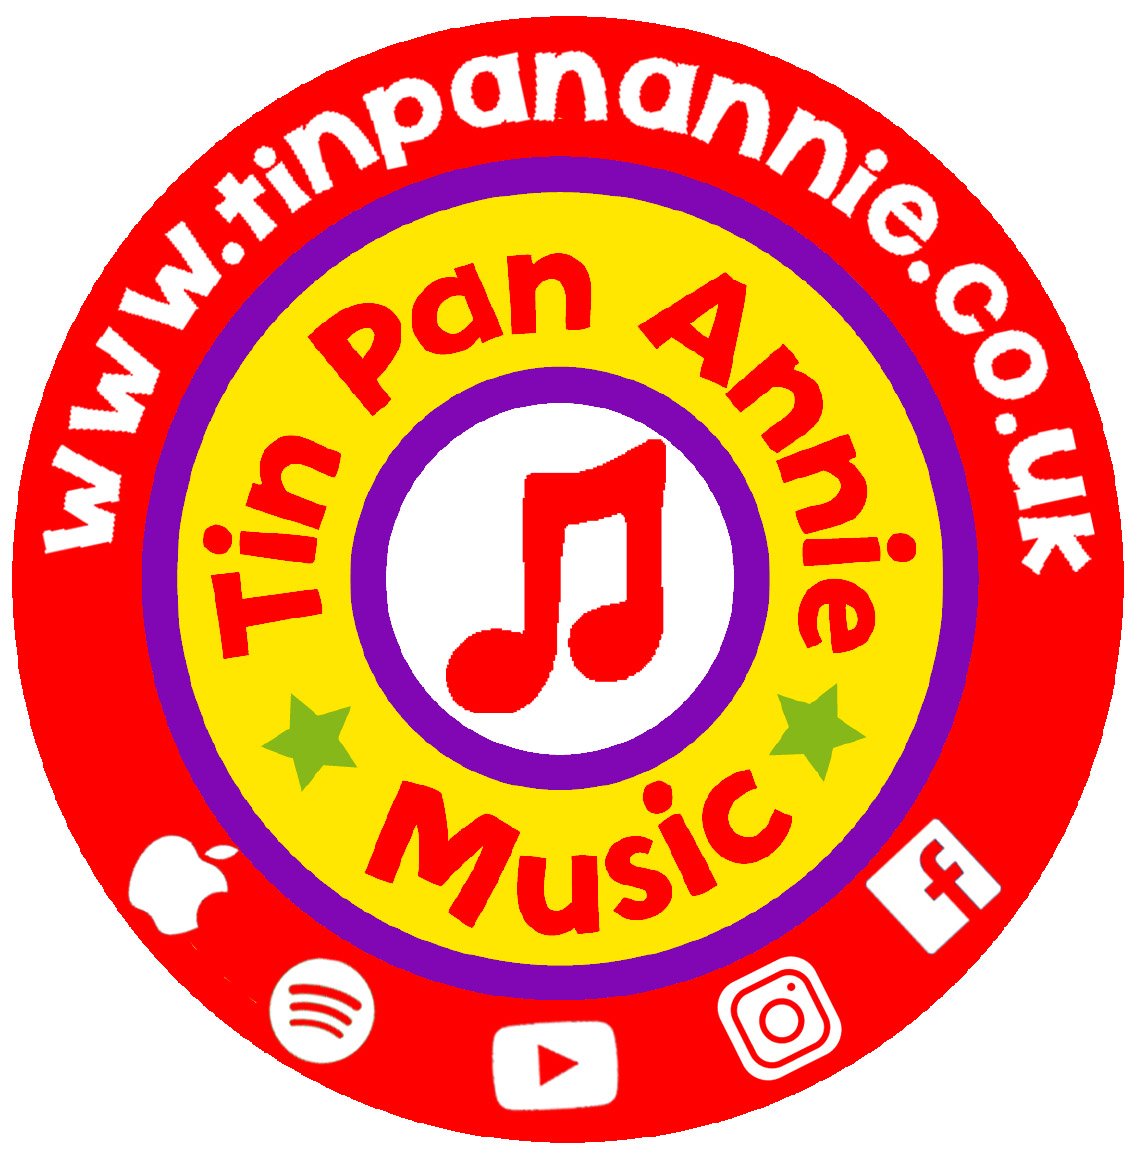 Tin Pan Annie Music logo